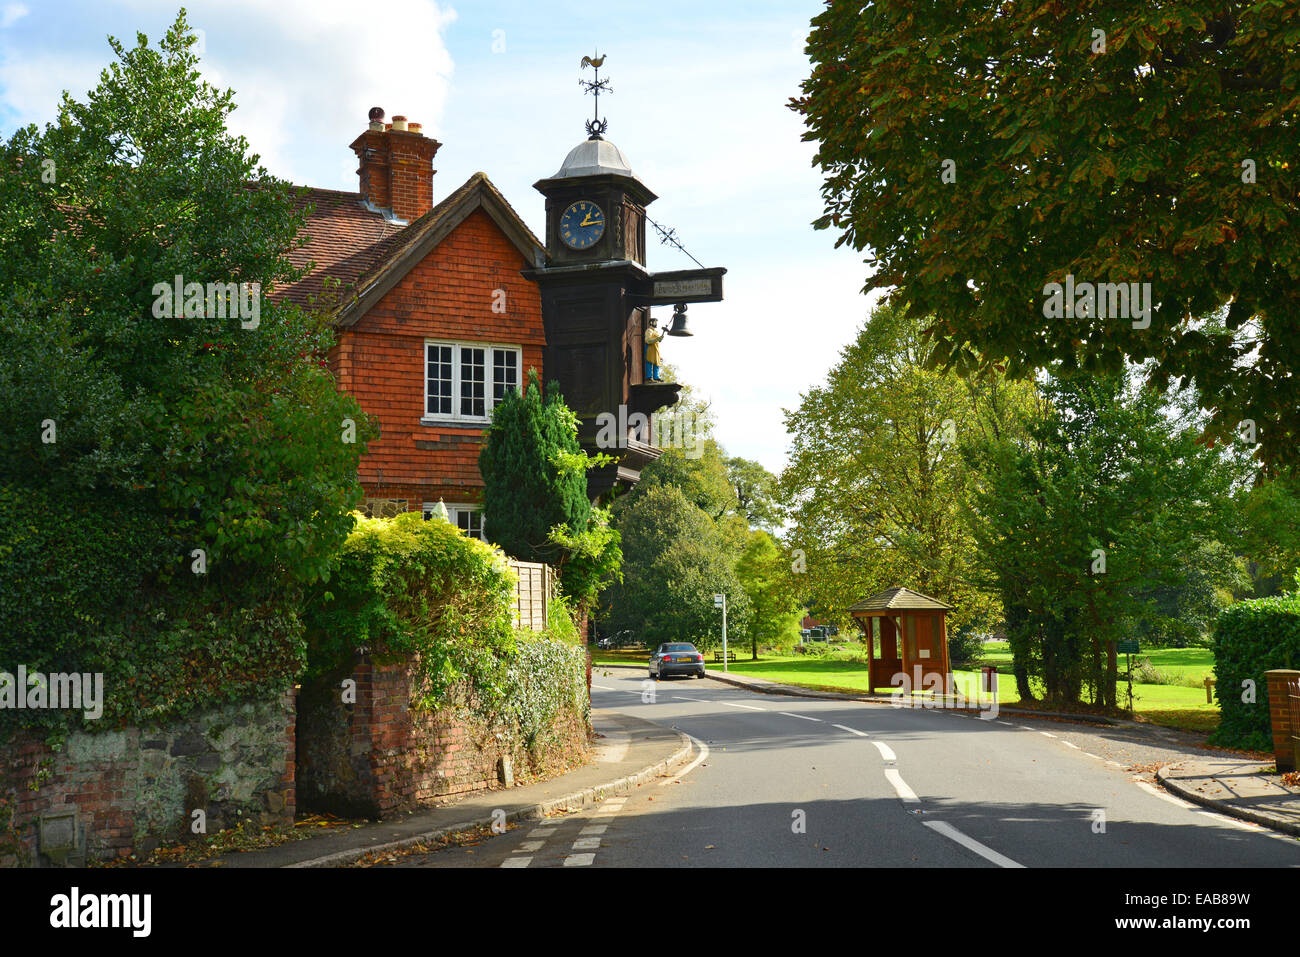 Abinger Hammer 'Jack le réveil de forgeron, Abinger Hammer, Surrey, Angleterre, Royaume-Uni Banque D'Images